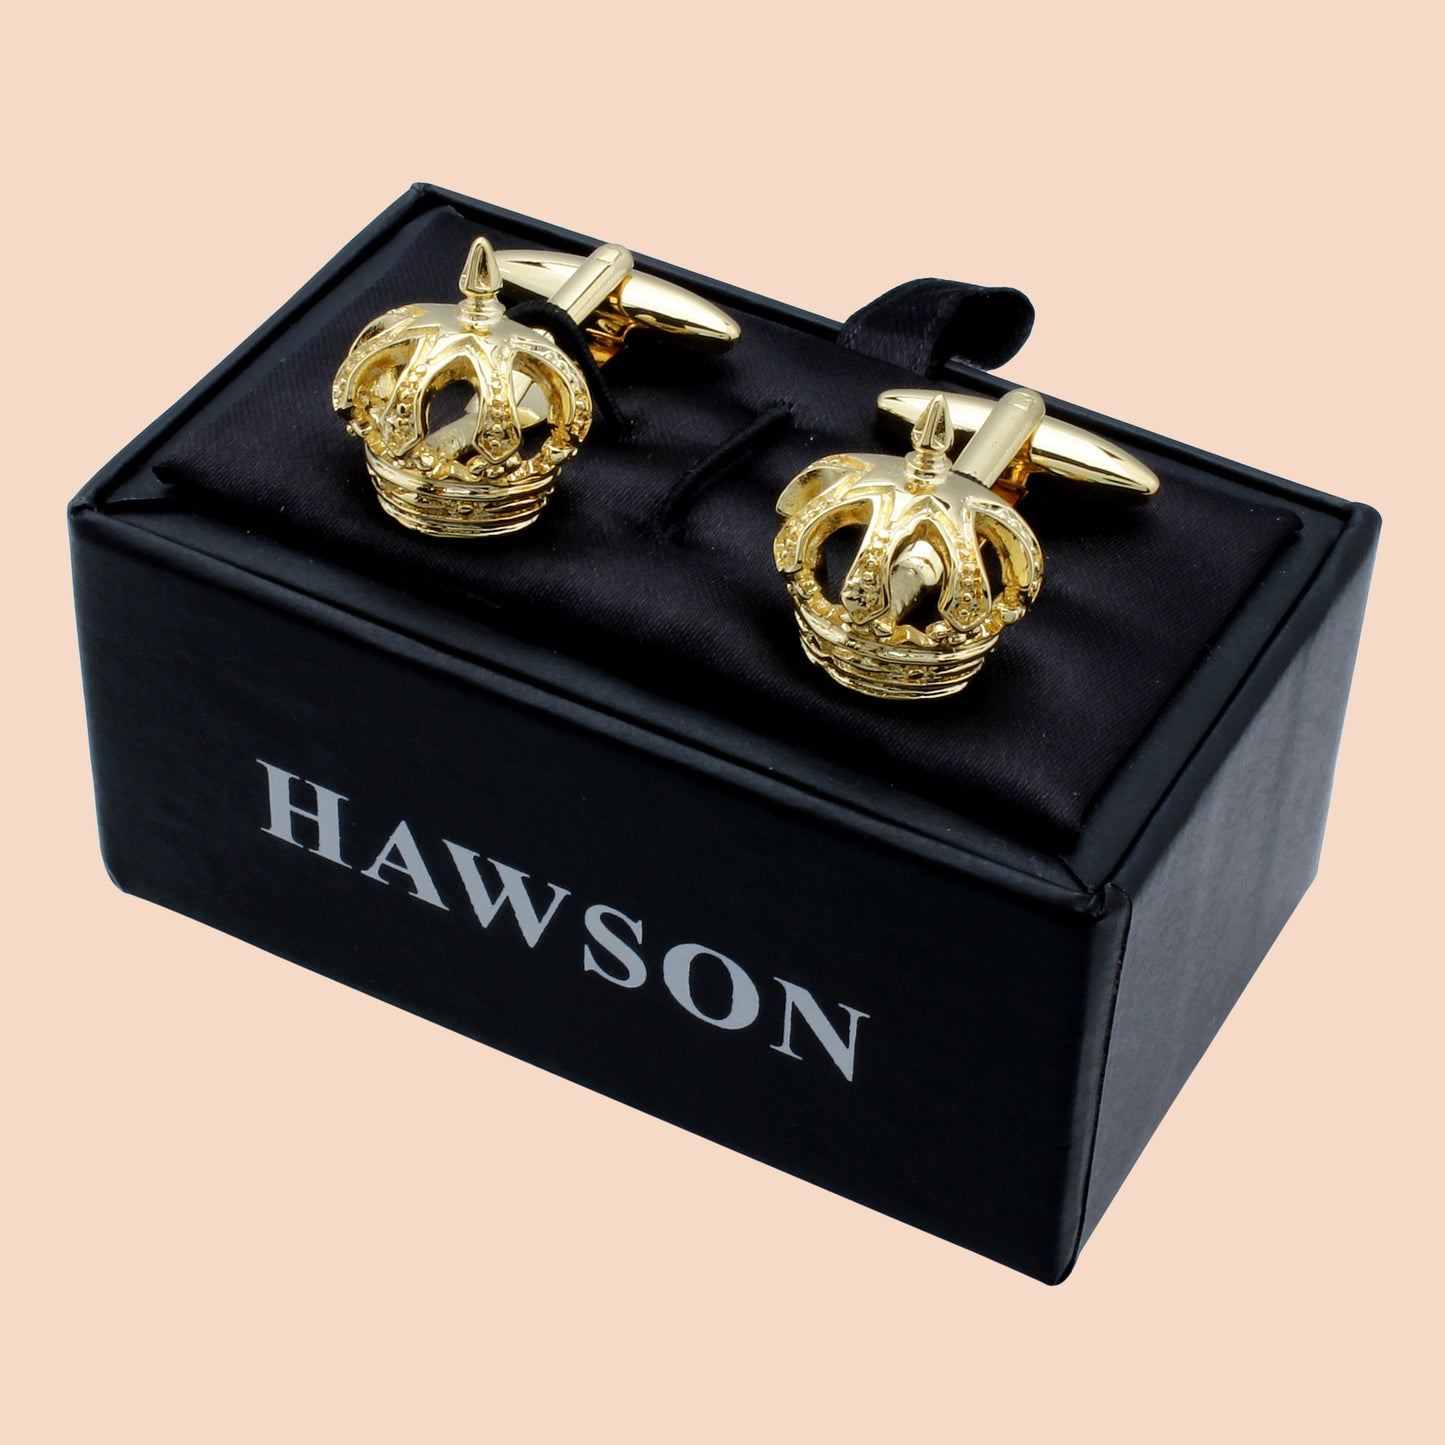 HAWSON Novelty Crown Cufflinks for Men